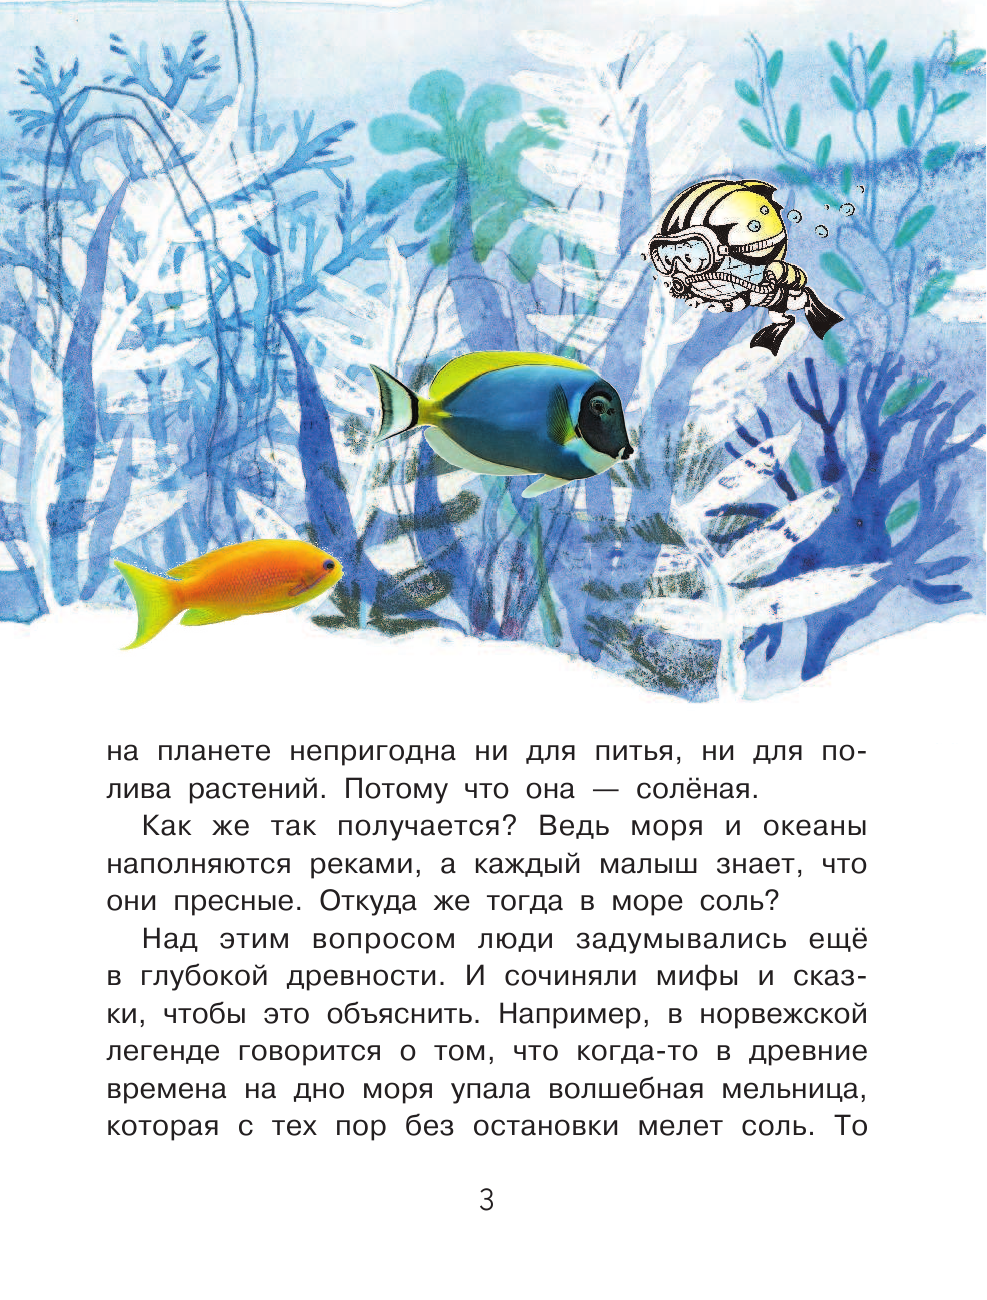 Пироженко Татьяна Александровна Почему море солёное? - страница 4